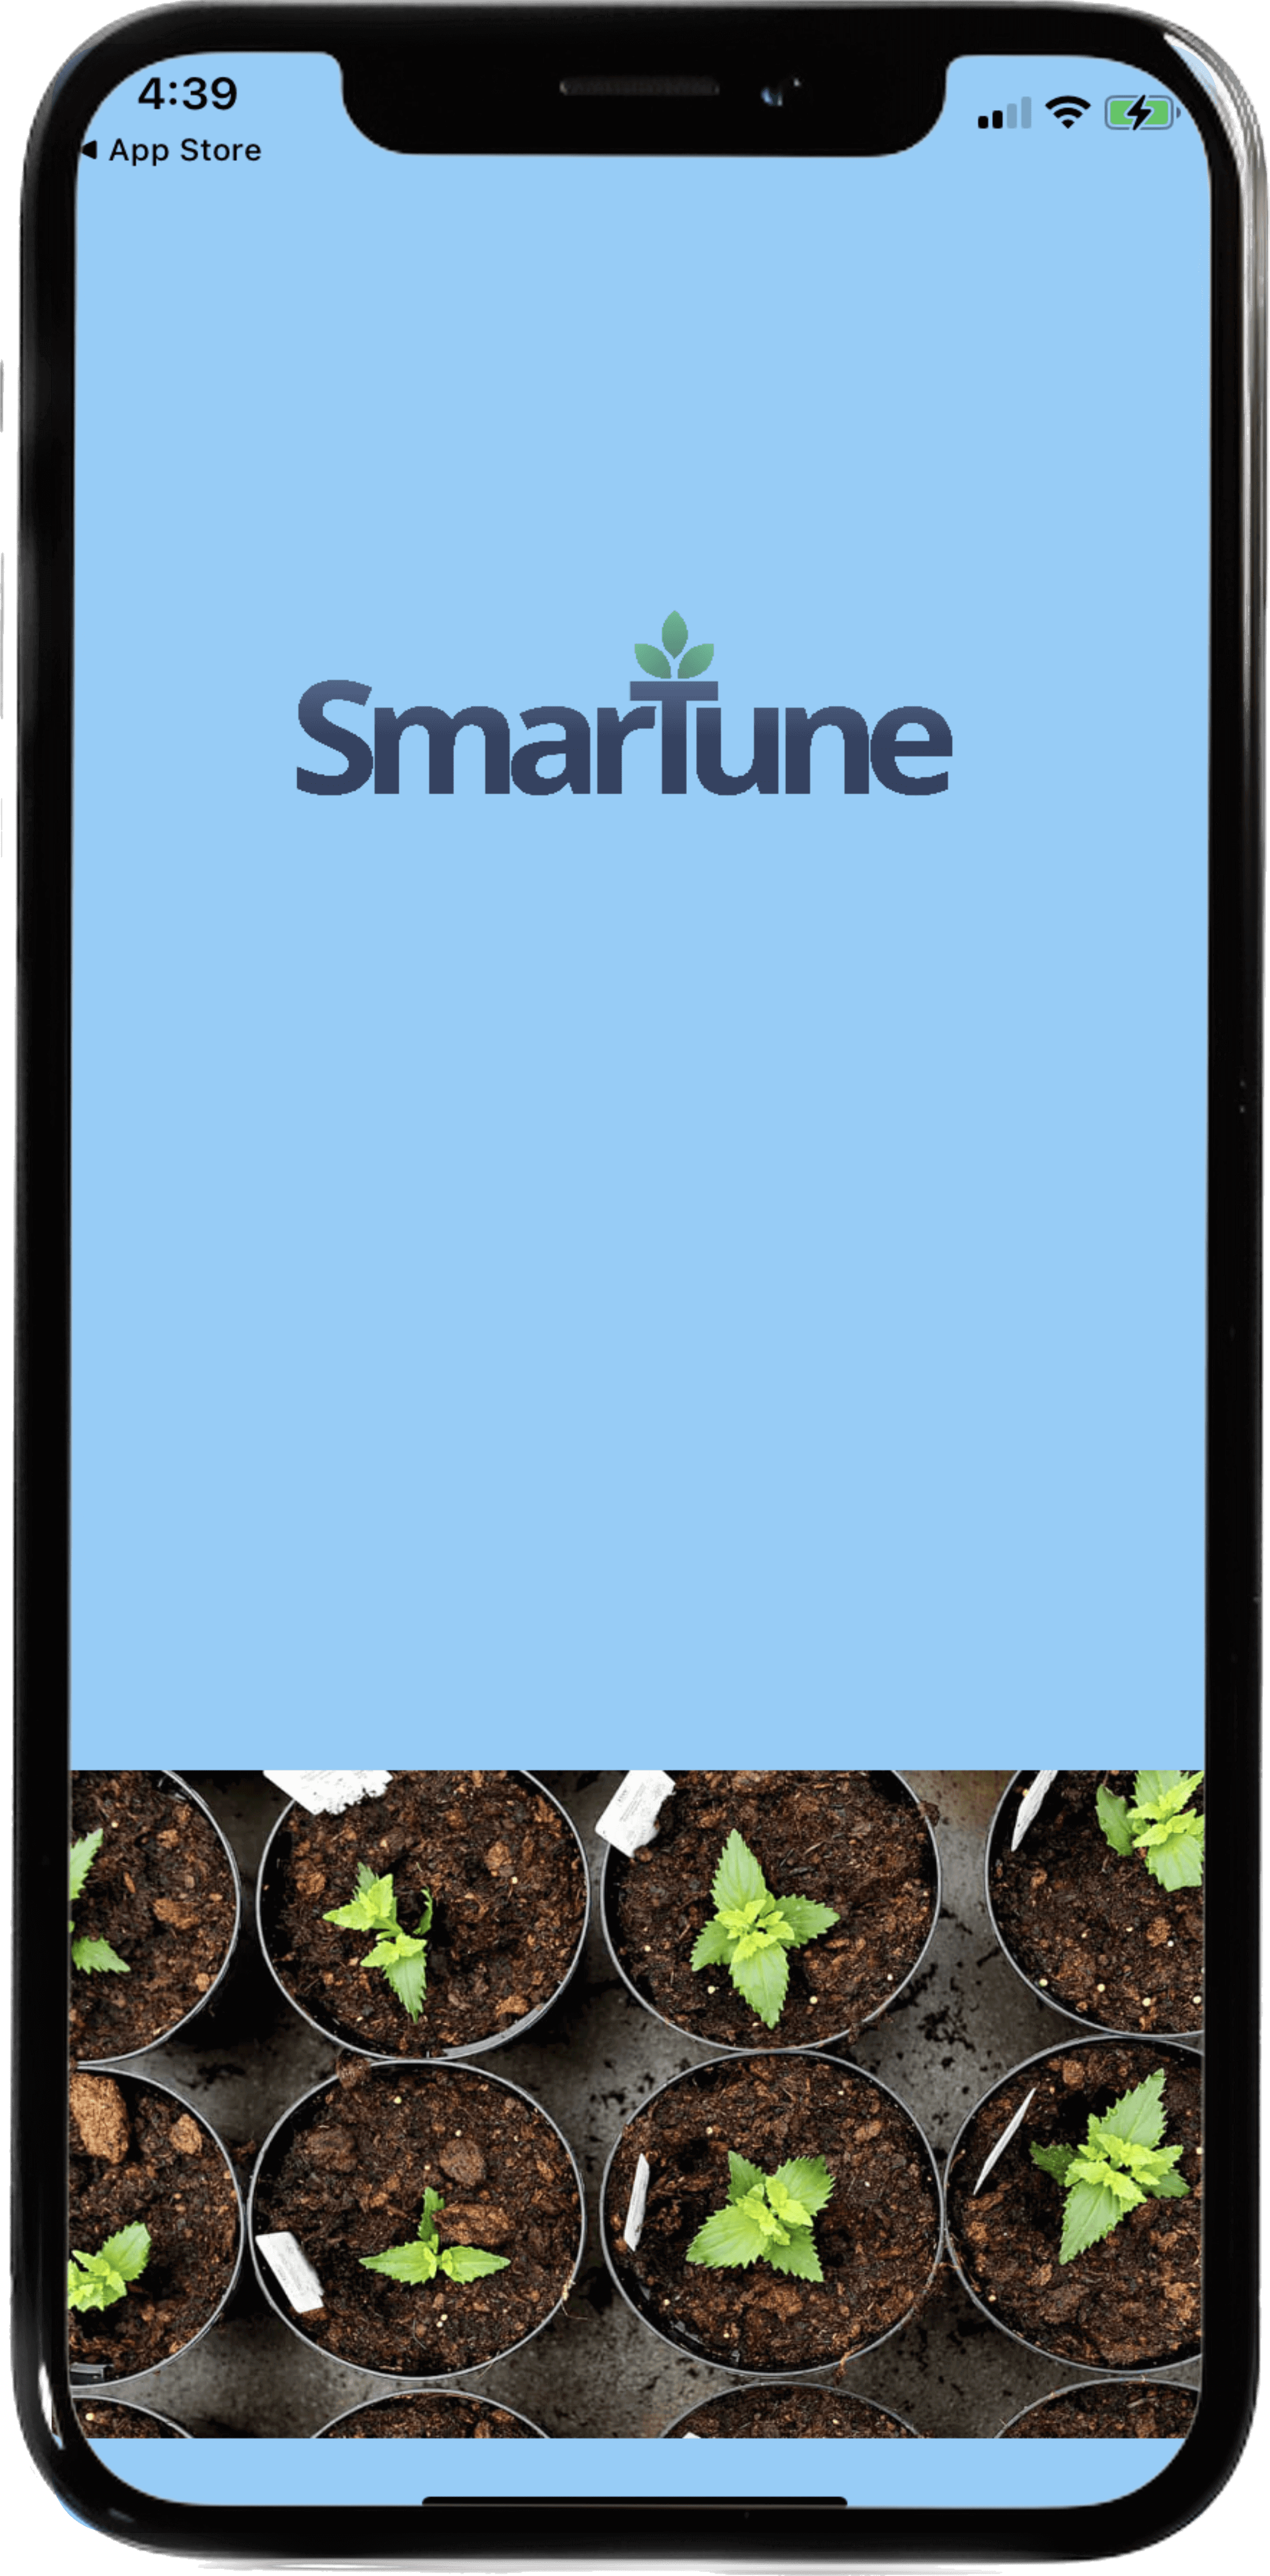 SmarTune App Home Screen